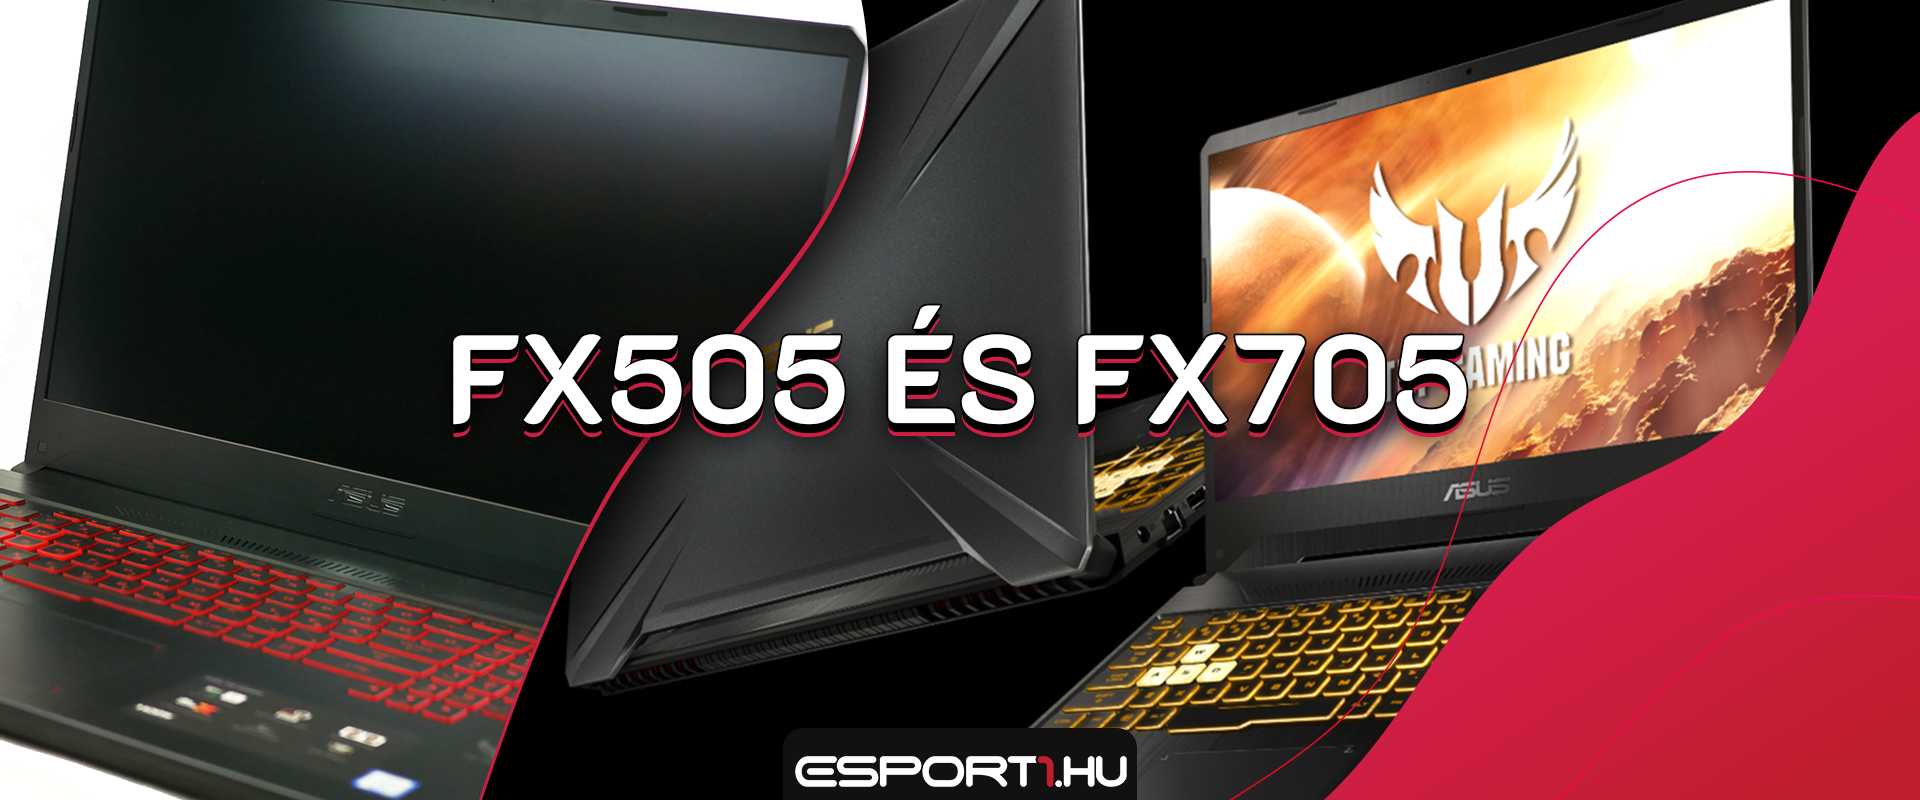 Bemutatkozott két új TUF laptop, itt az FX505 és az FX705